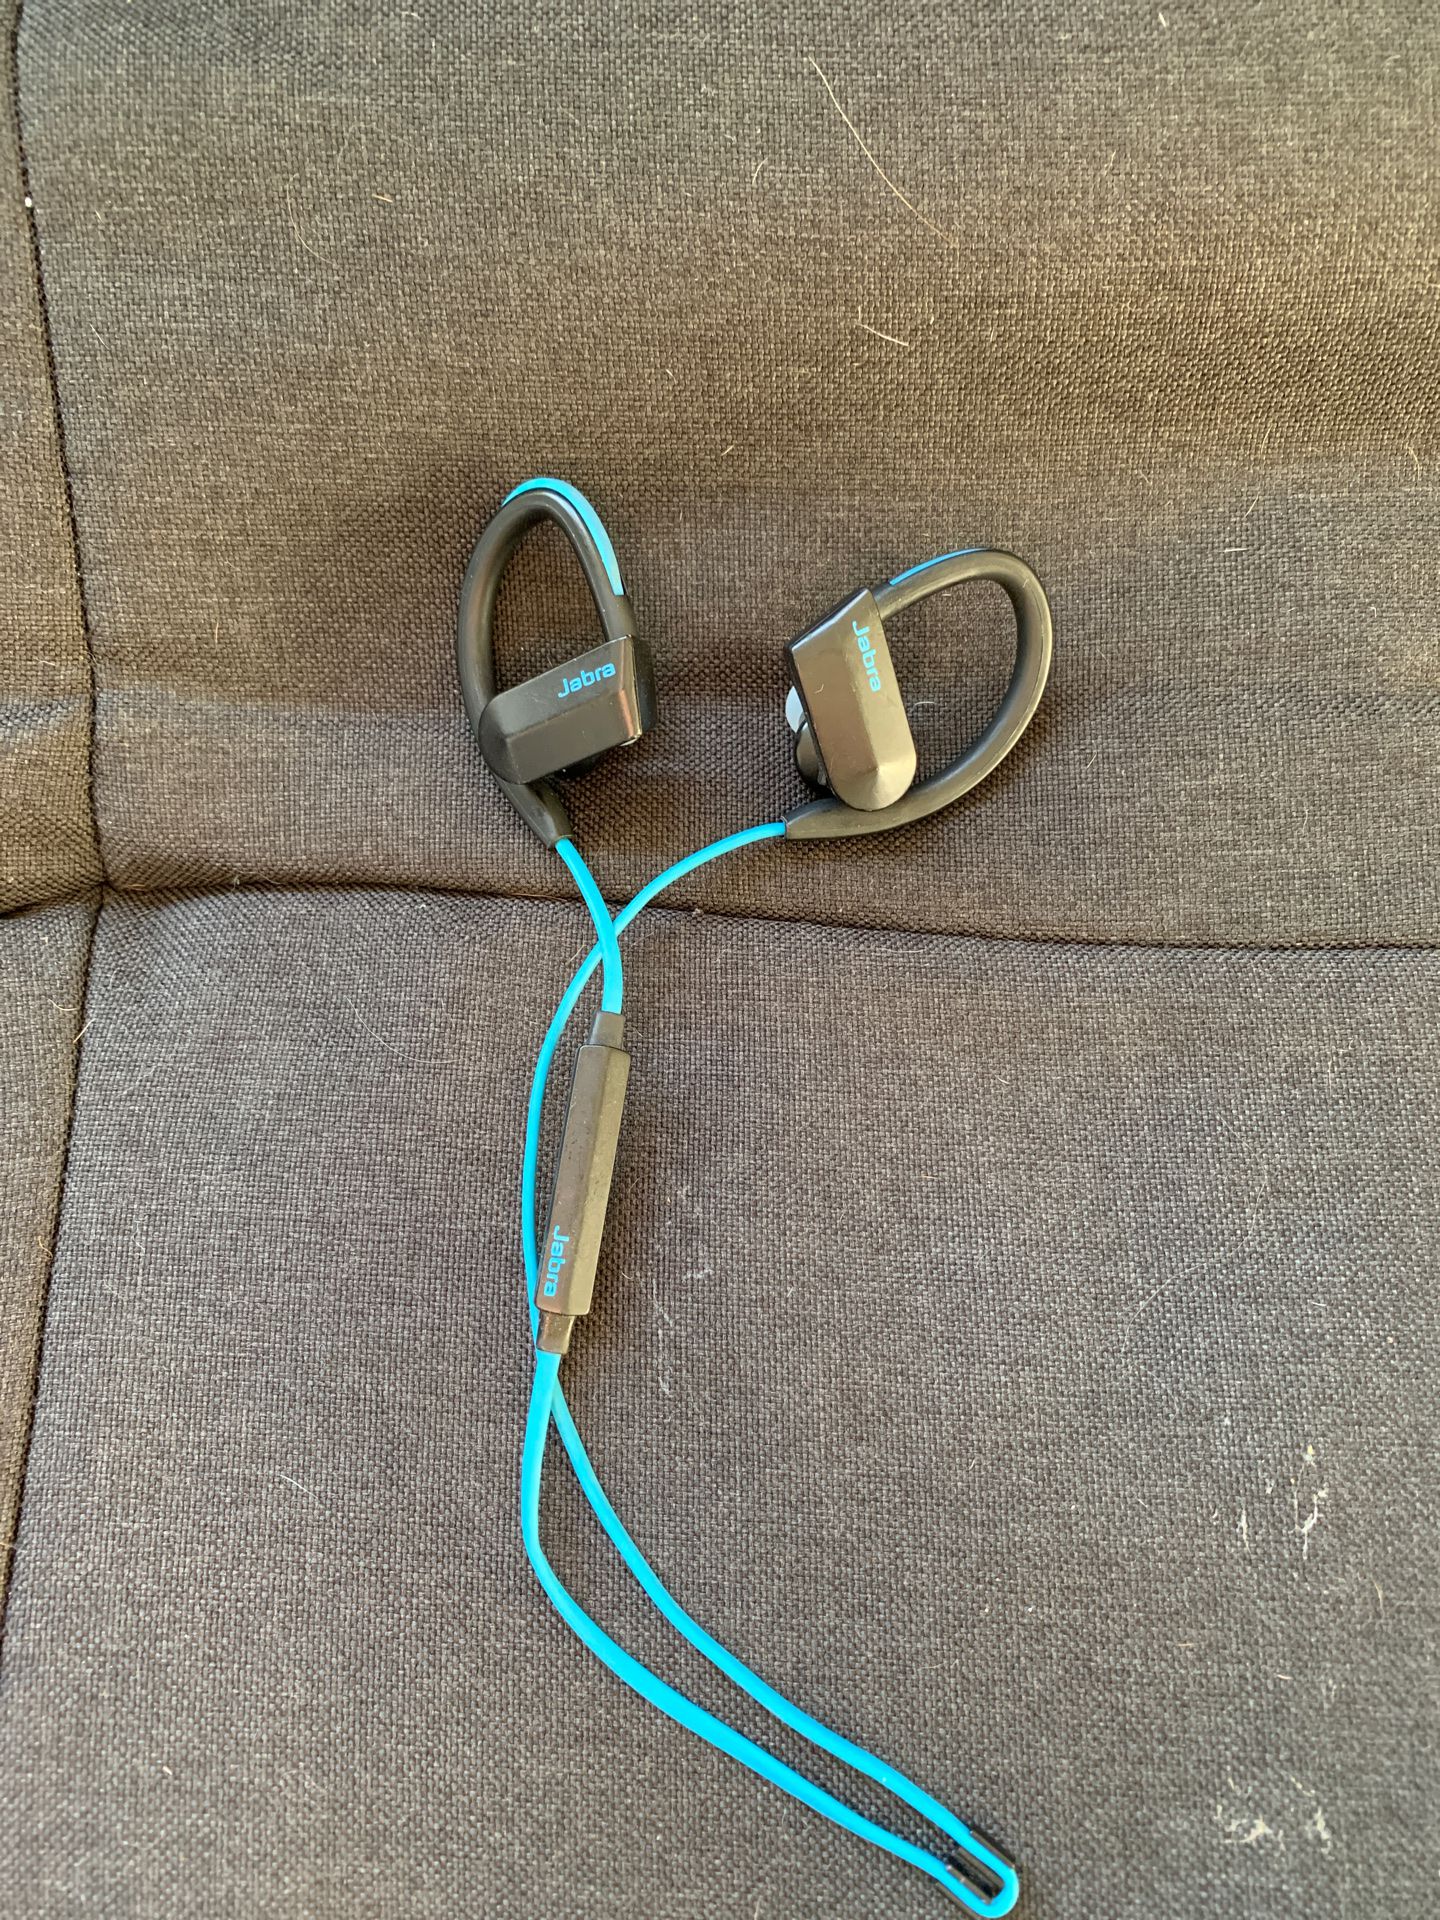 Jabra Bluetooth Headphones